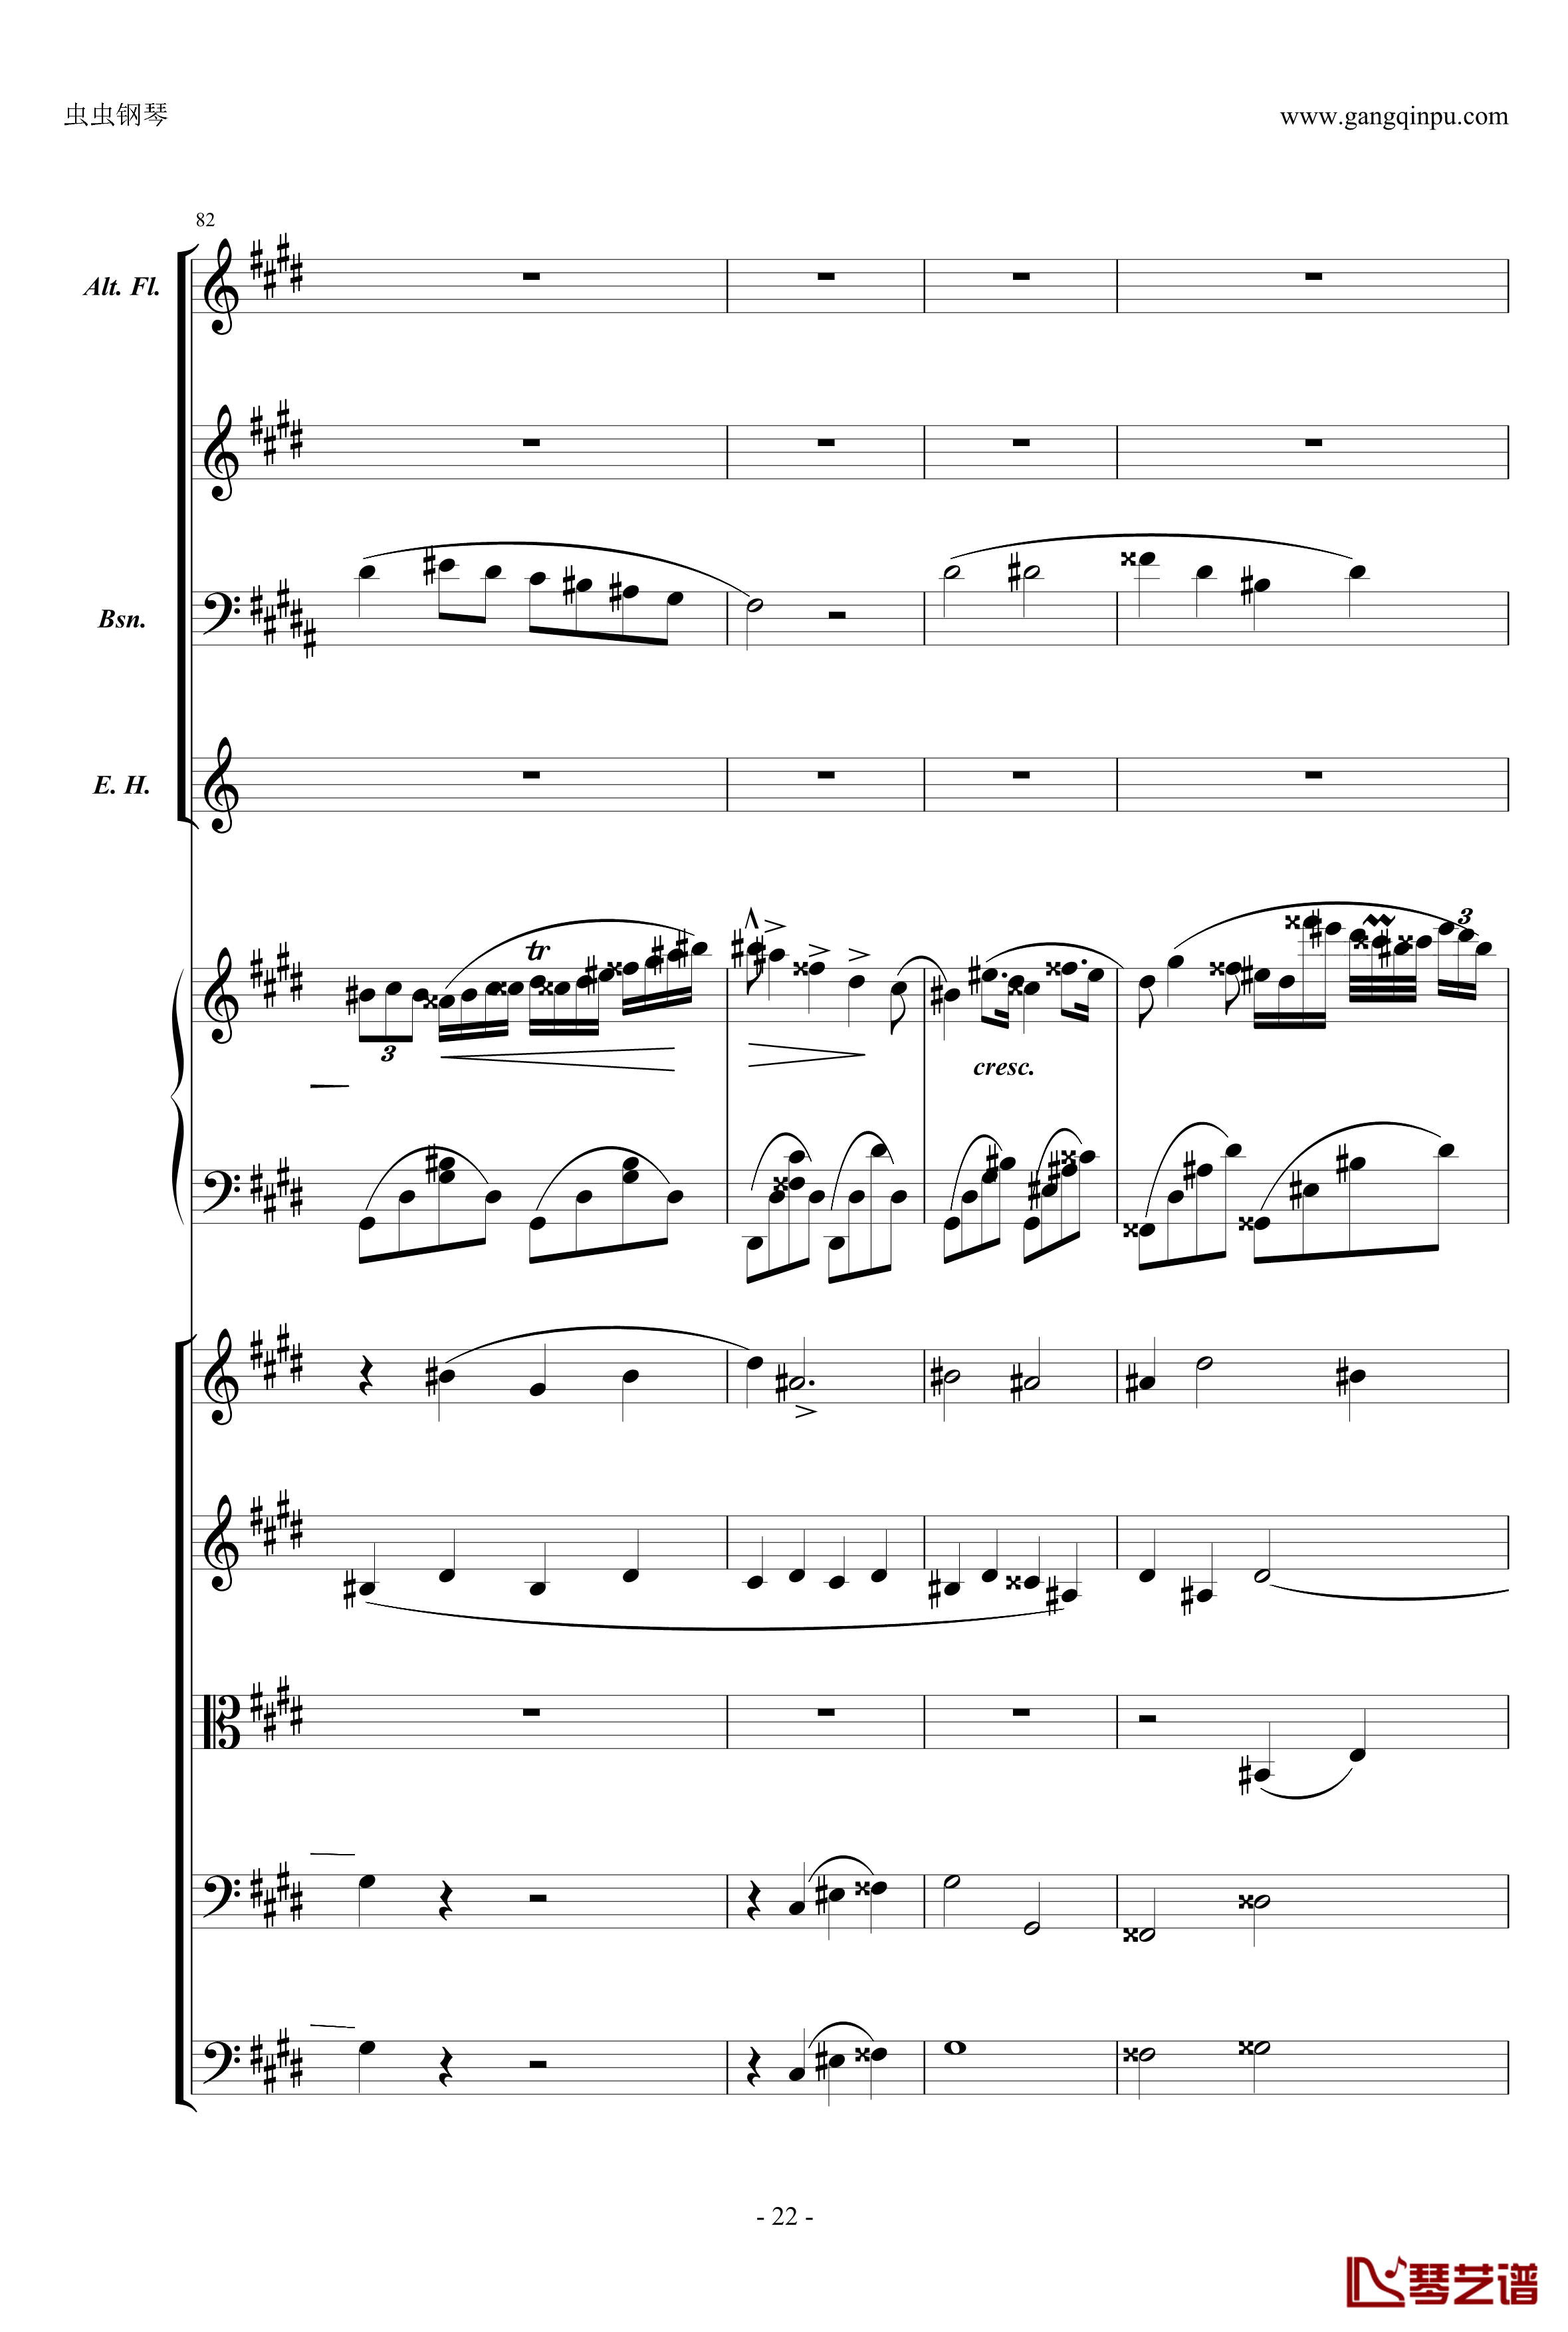 萧邦第一钢琴协奏曲第二乐章钢琴谱-肖邦-chopin22